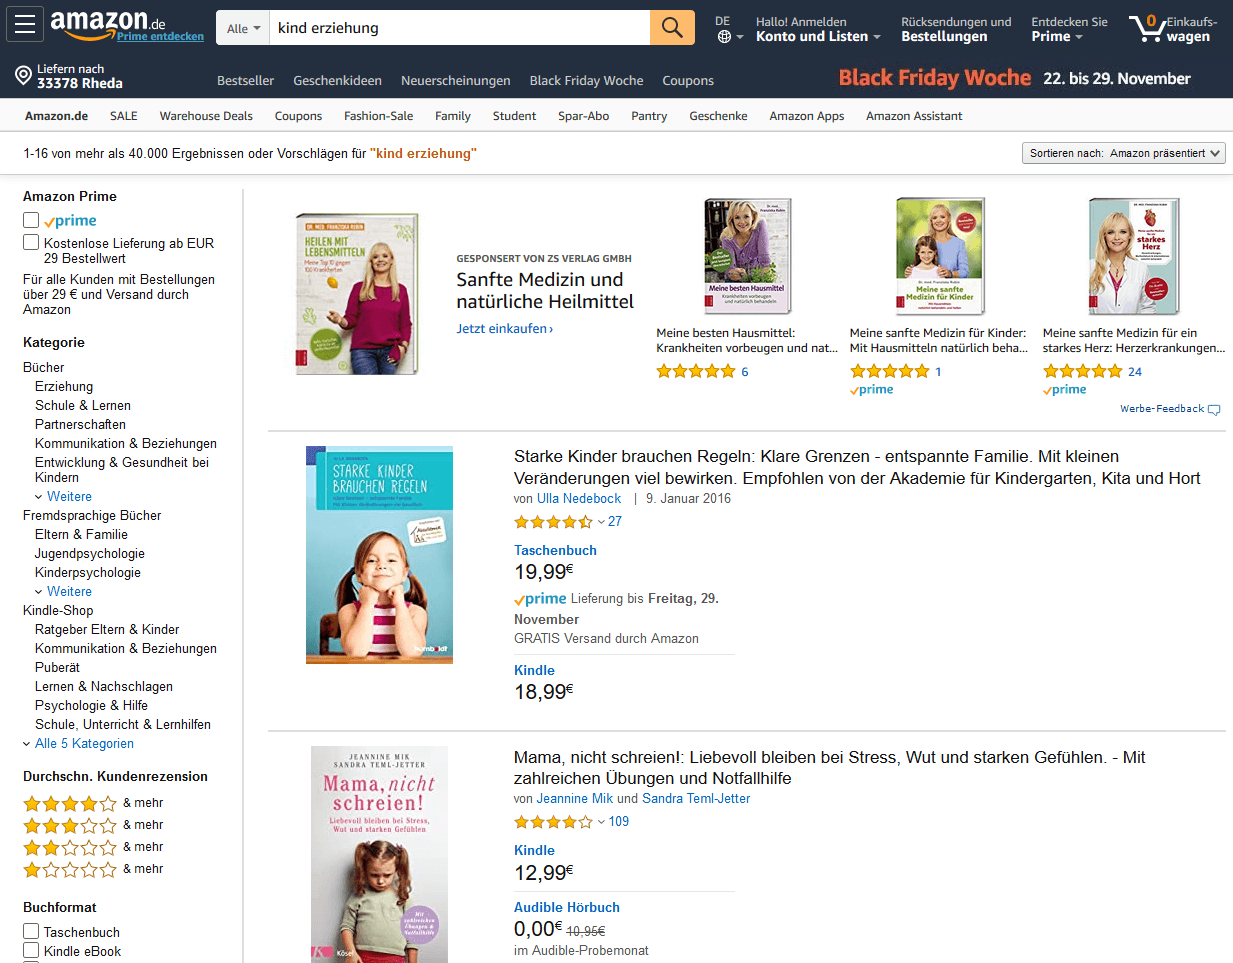 Bücher bei Amazon über Kind-Erziehung